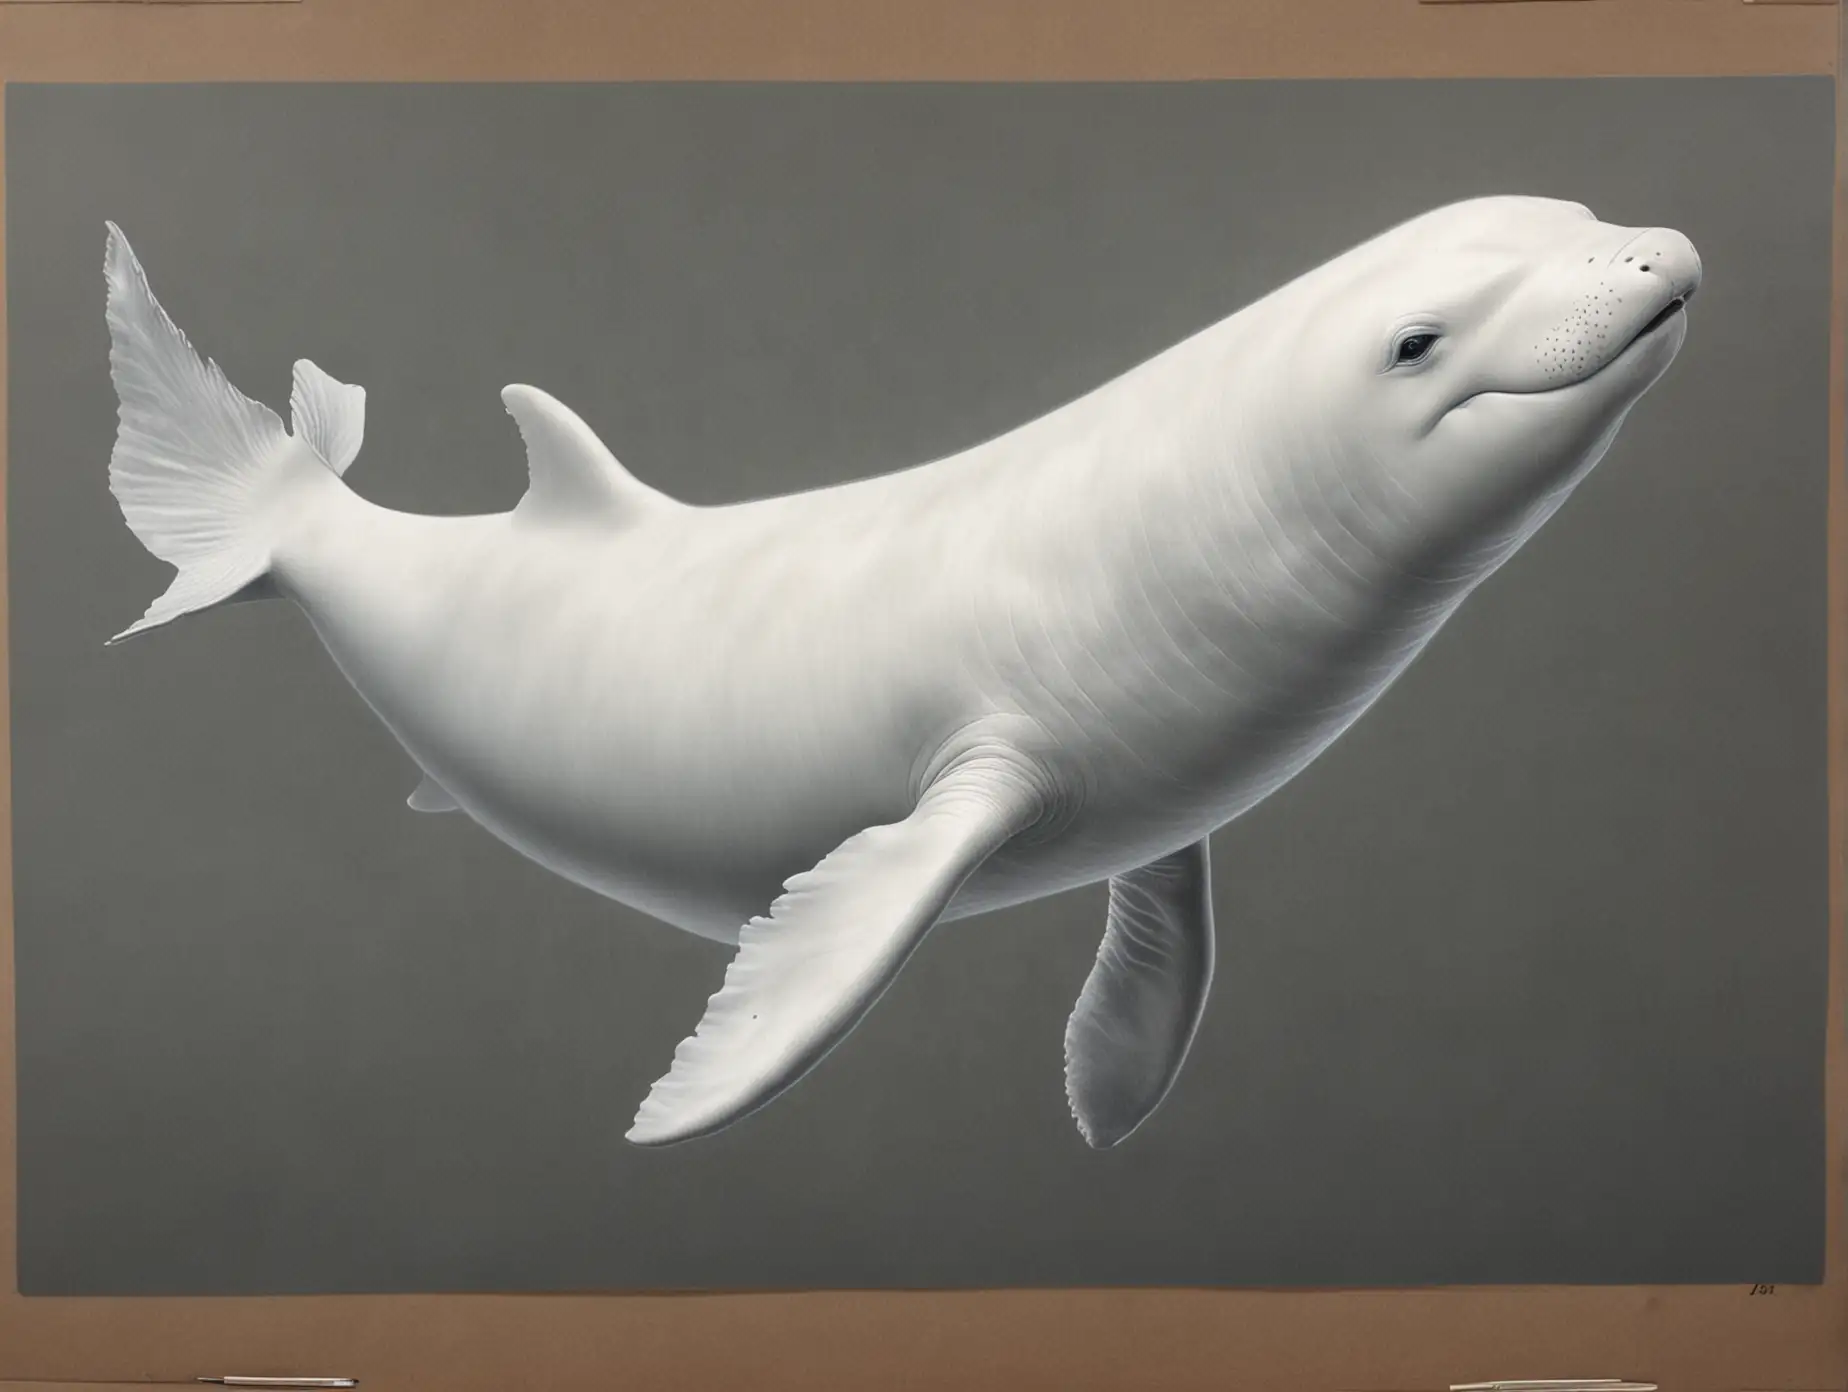 Majestic-Realistic-Drawing-of-Beluga-Whale-in-Ocean-Habitat